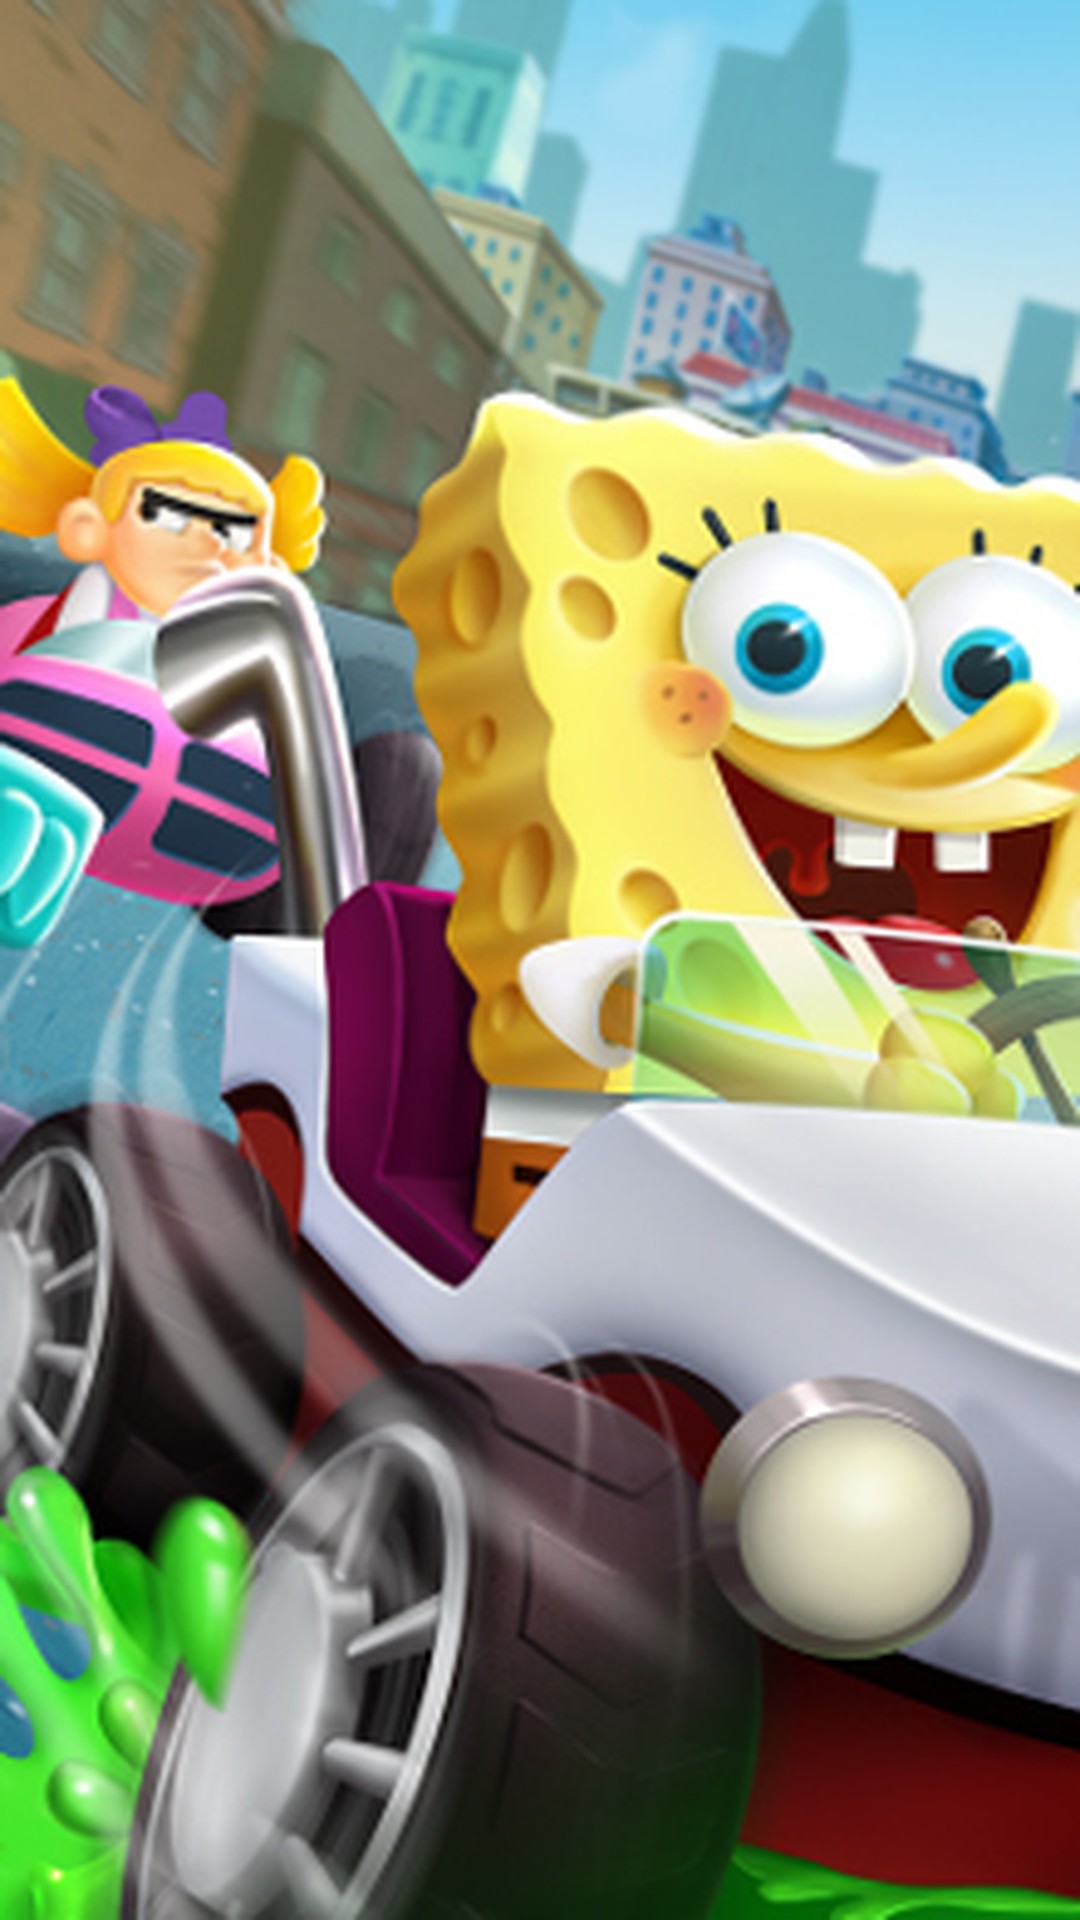 Nickelodeon Kart Racers traz corridas com desenhos animados clássicos